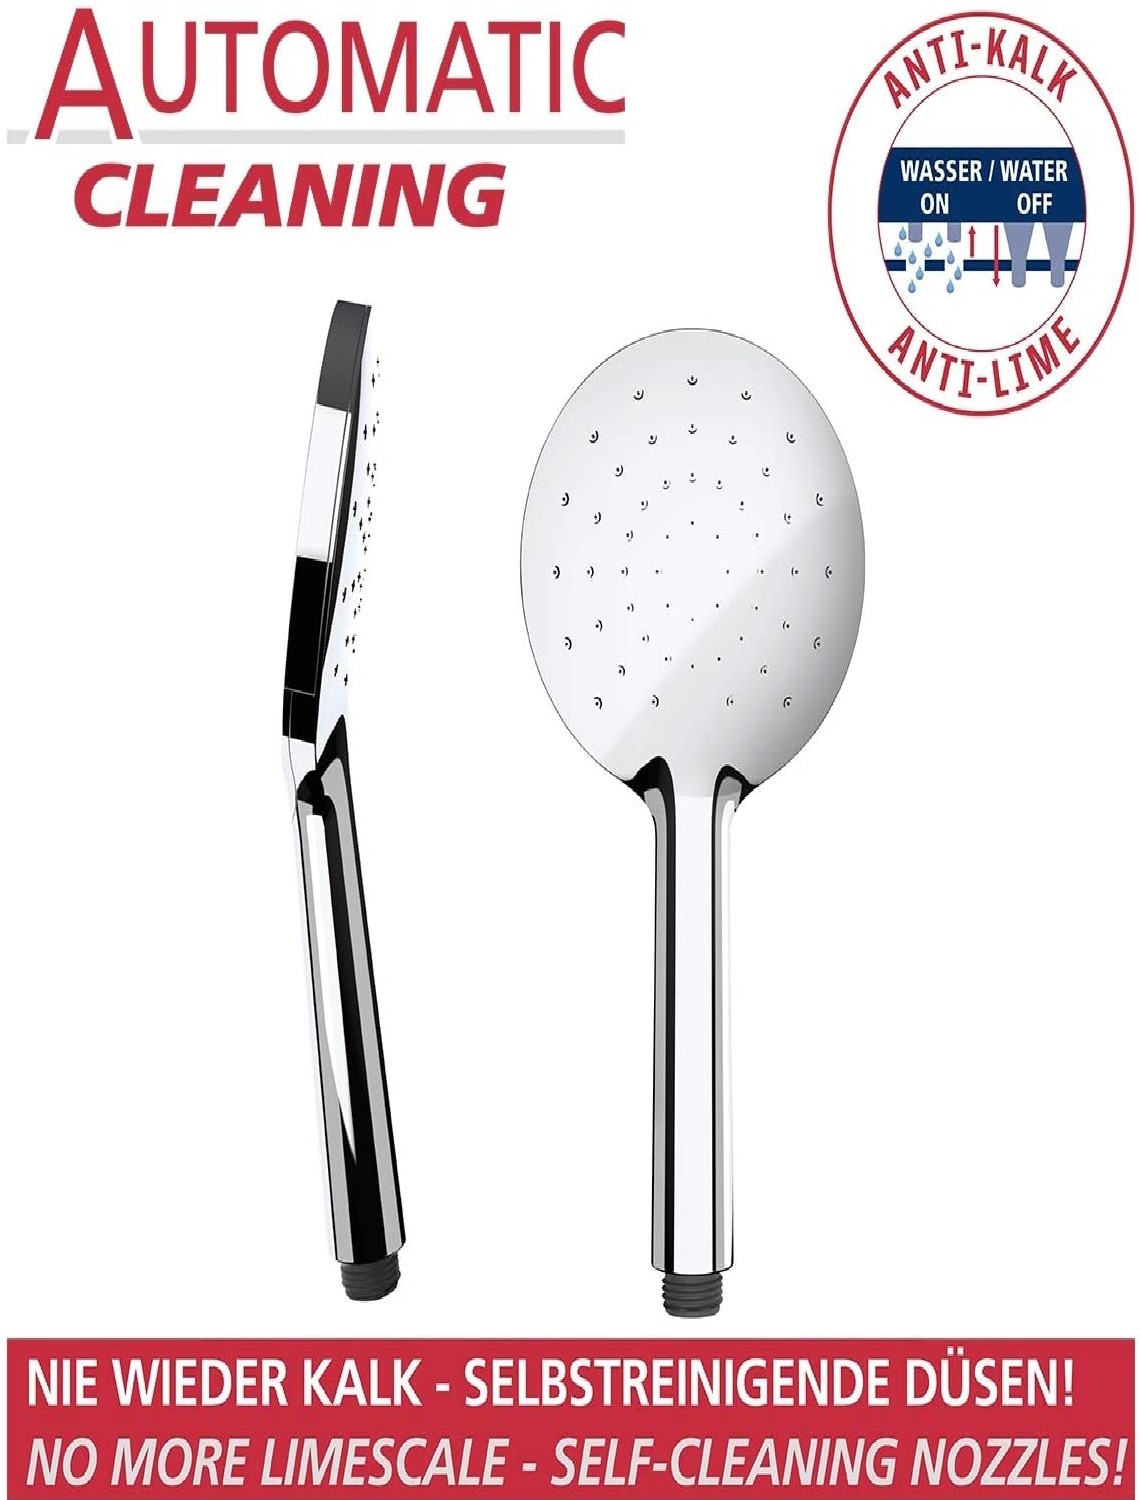 Duschkopf Automatic Cleaning Chrom Ø 12 cm, Anti-Kalk Universal-Handbrause mit automatischem Reinigungssystem